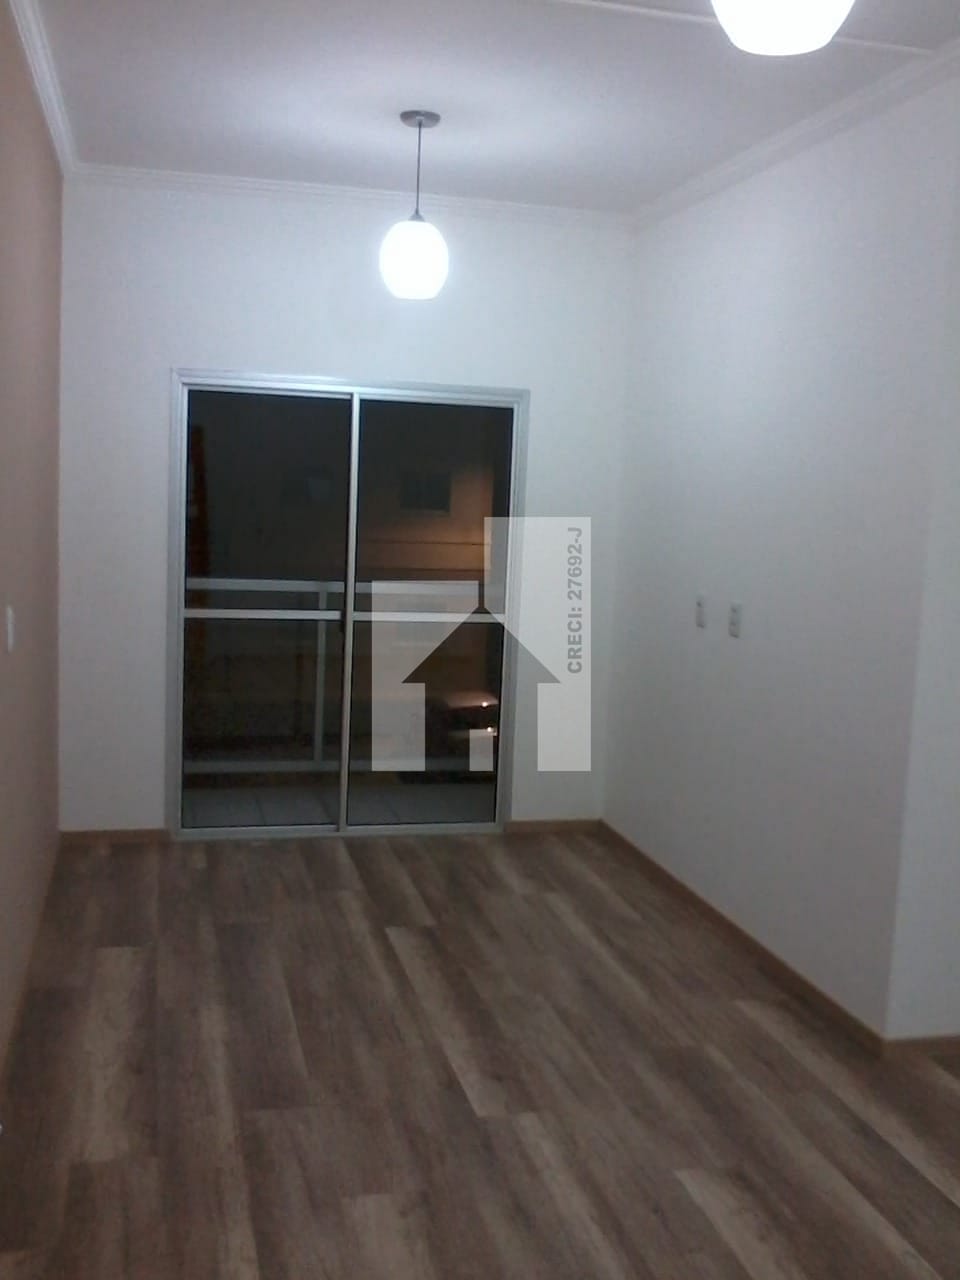 Apartamento em Morada das Vinhas, Jundiaí/SP de 57m² 2 quartos à venda por R$ 218.000,00